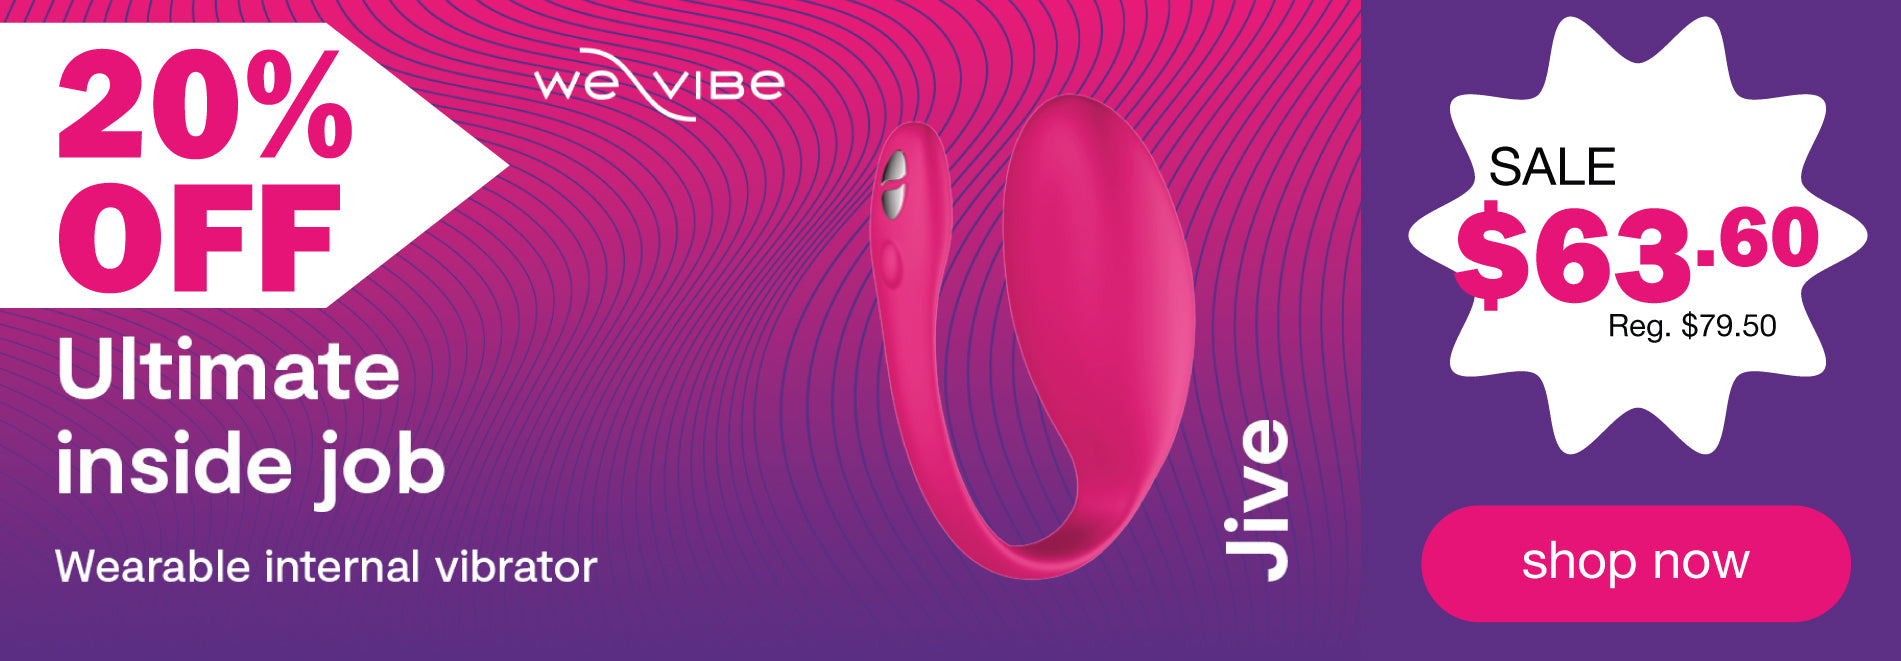 We-vibe Jive Sale